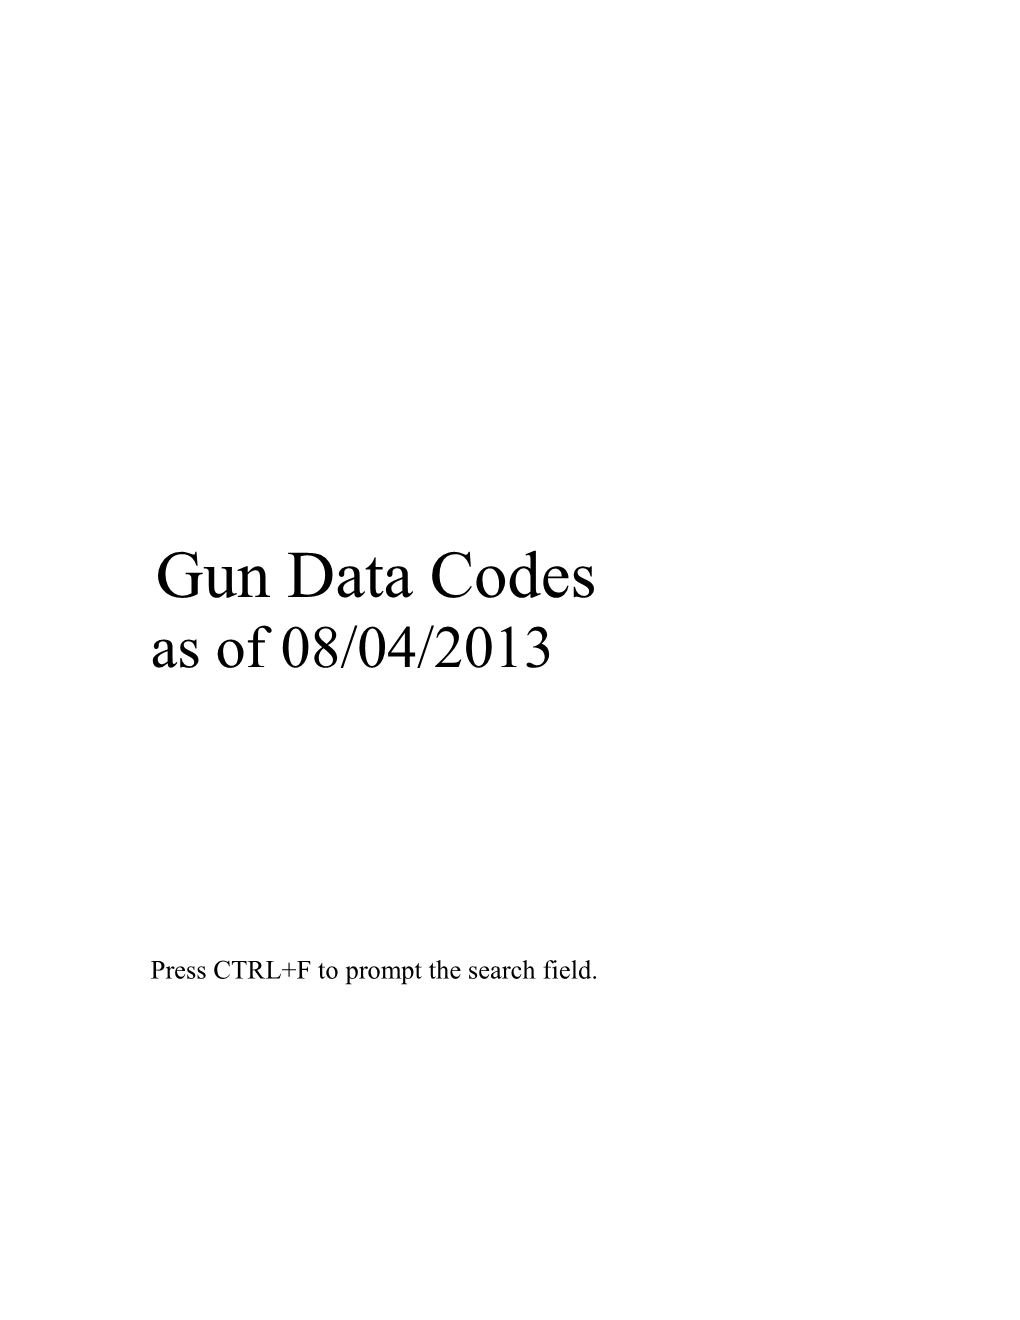 NCIC Gun Code Manual